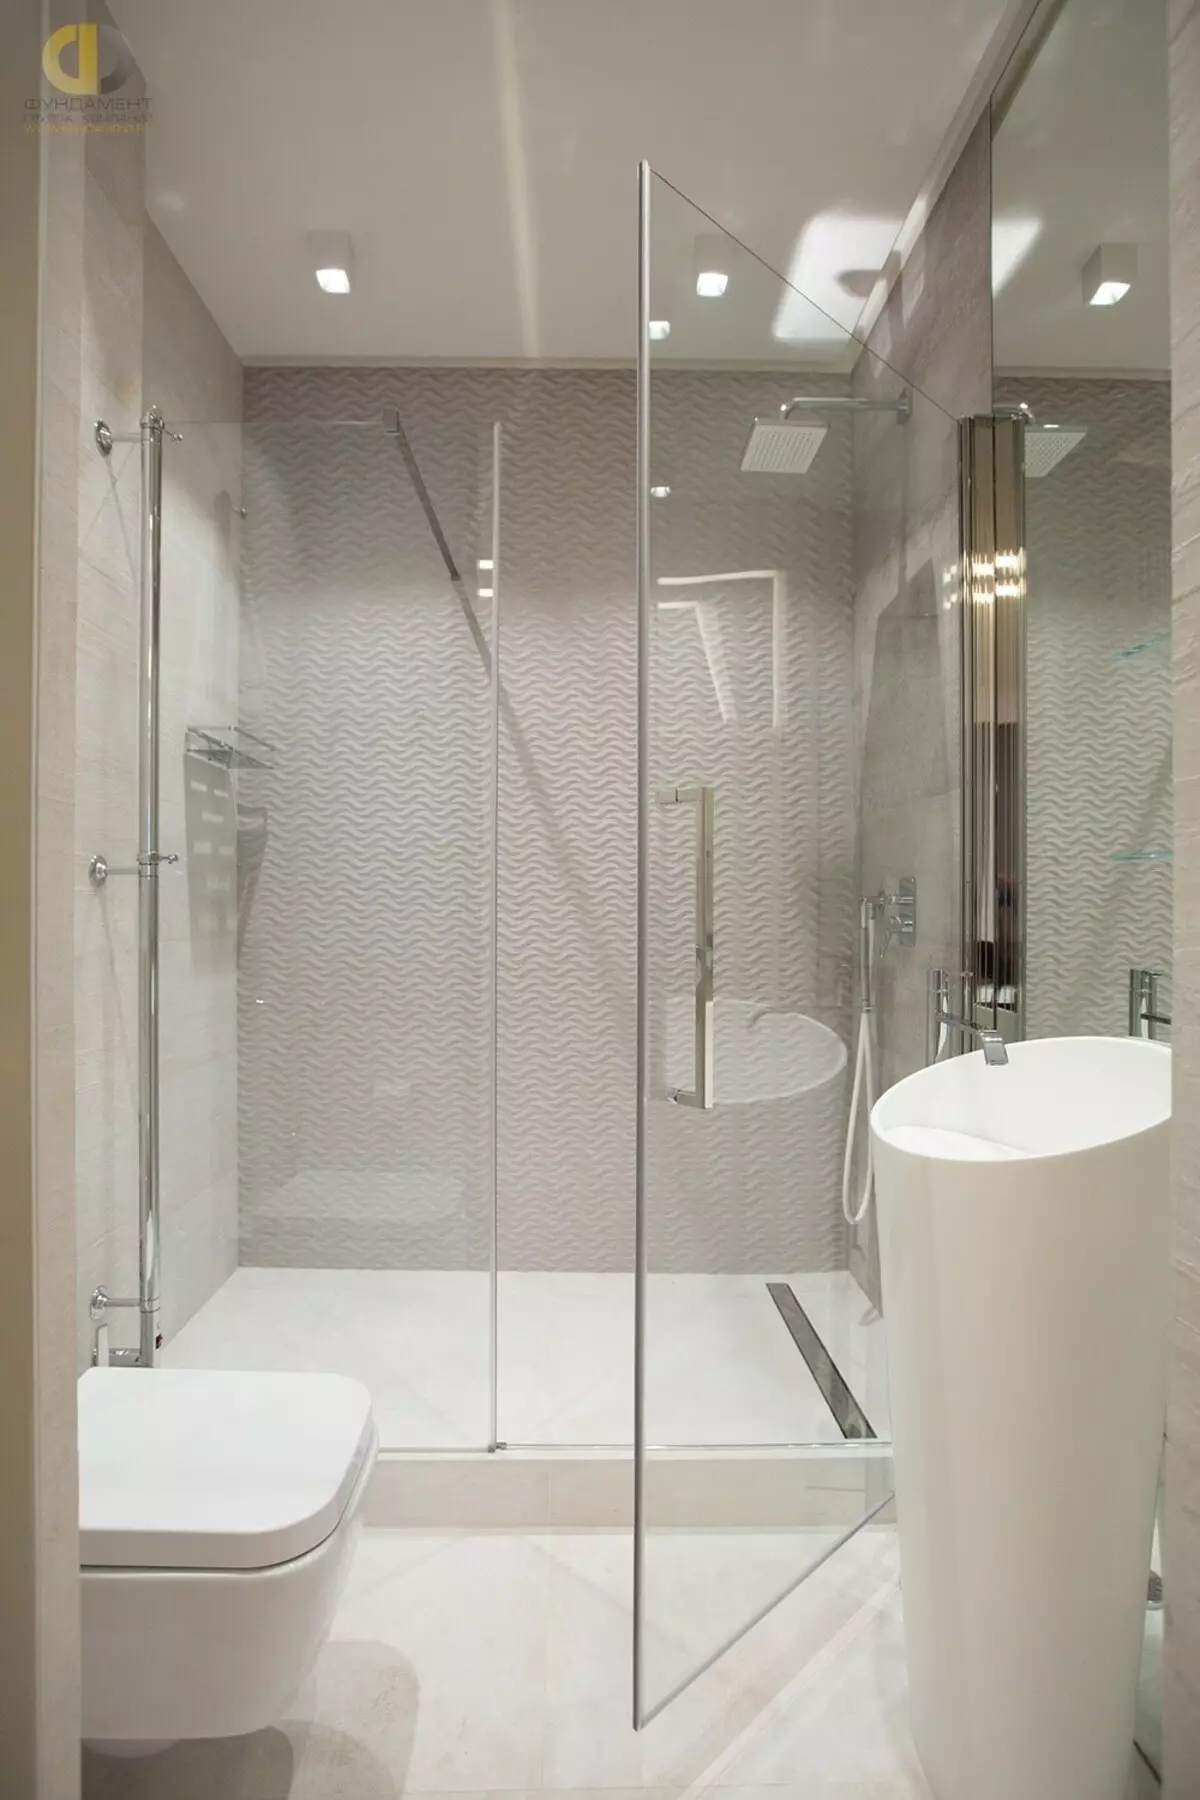 Cabinas abiertas de ducha: sin techo y paleta baja de 90x90 cm, modelos angulares, tamaños 100x100 y 120x80 cm, otros modelos para el baño 10334_48